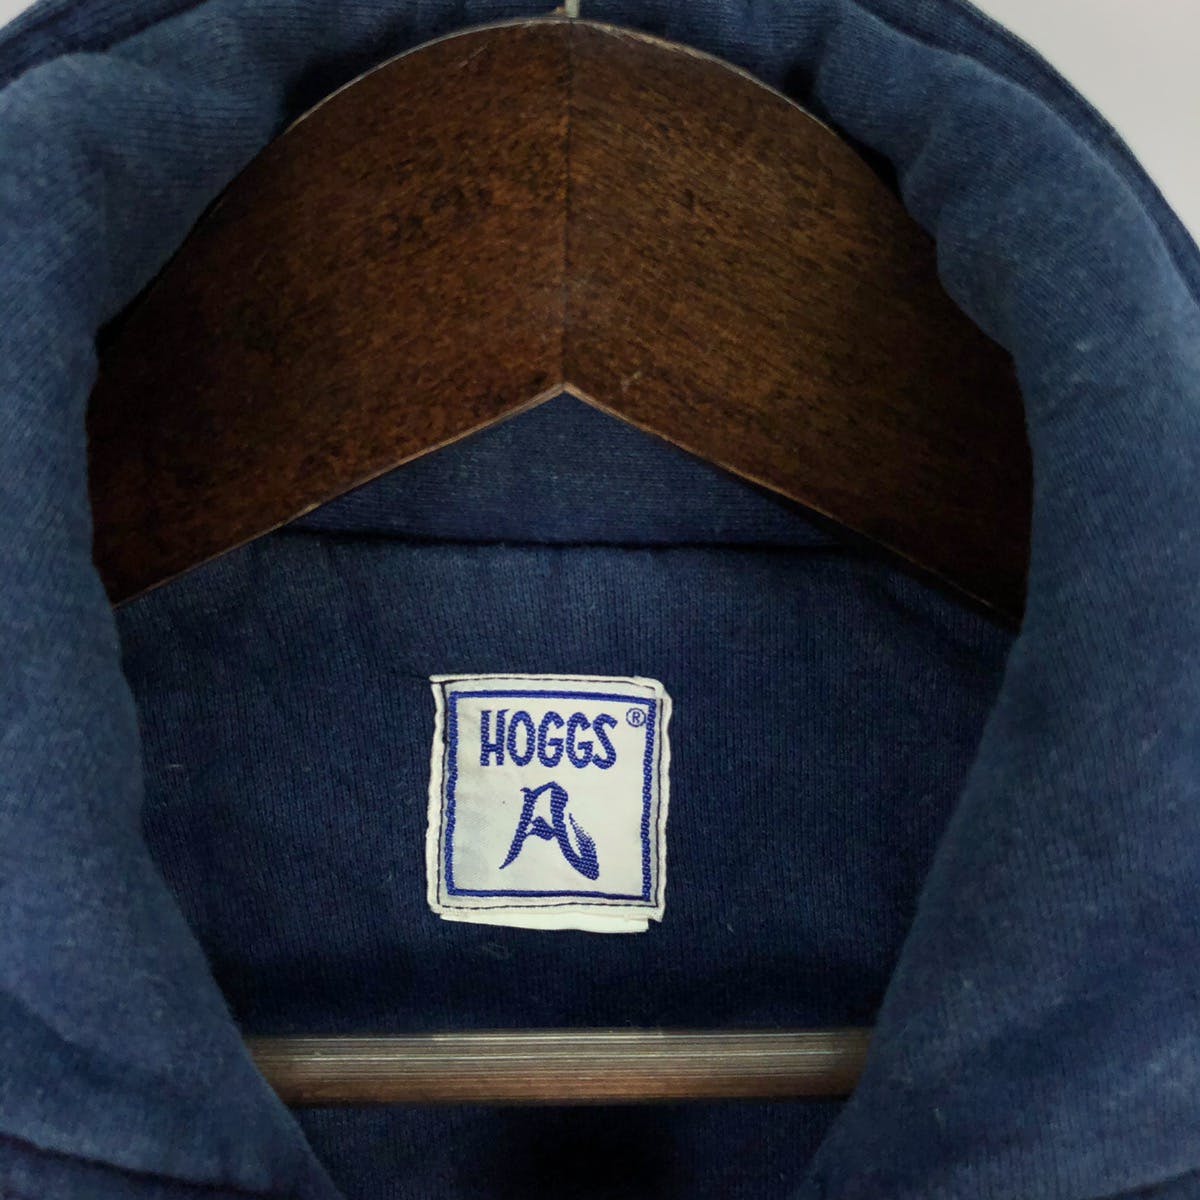 Nepenthes Hoggs Bondage Zipped Jacket Indigo Blue - 4